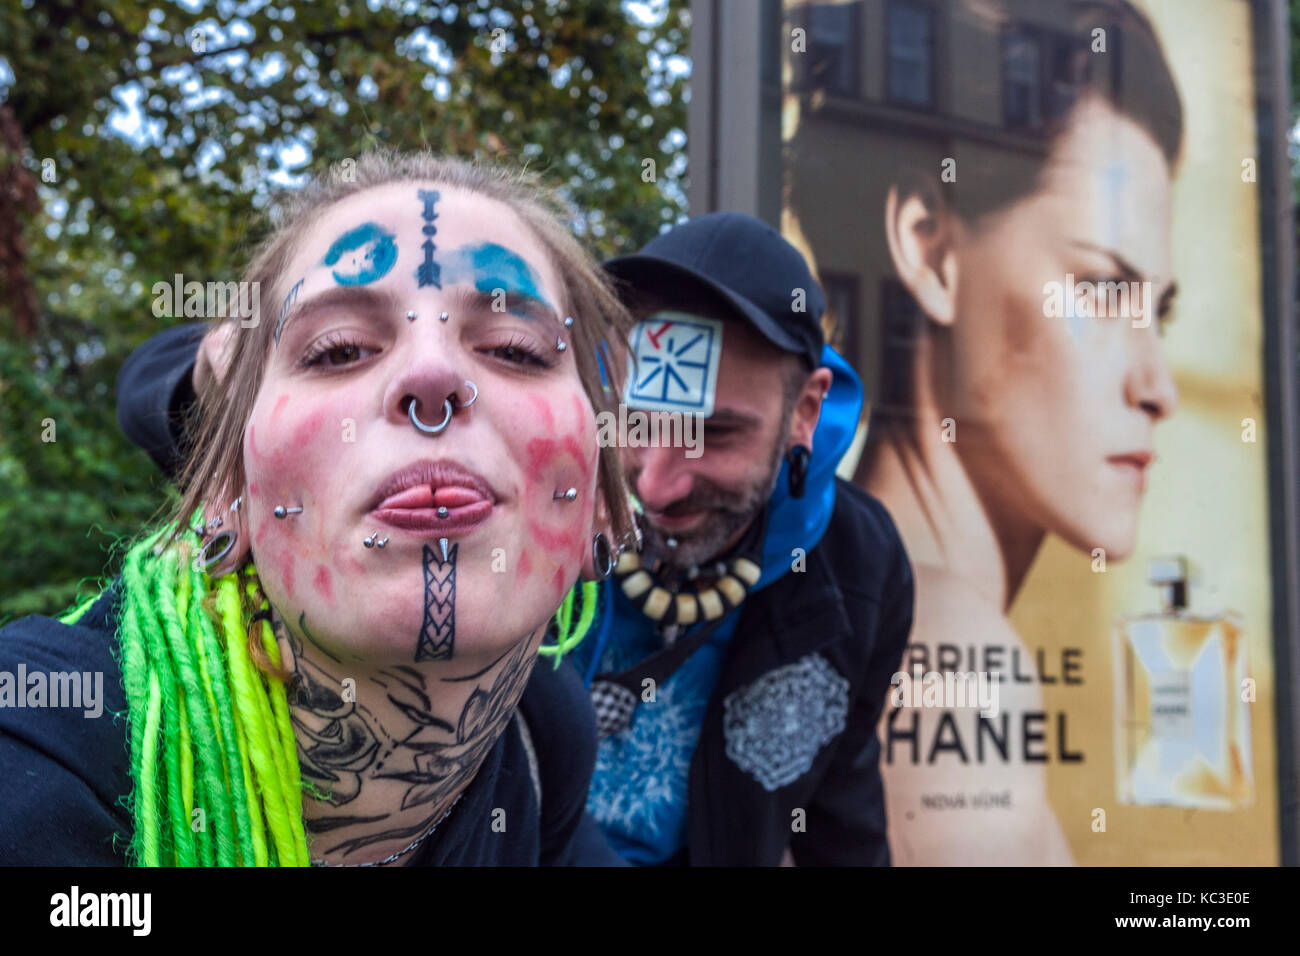 Giovane donna tatuata ragazza con piercing sul viso e tempri verdi, nella parte posteriore è un annuncio sul profumo Chanel, Praga, Repubblica Ceca Foto Stock